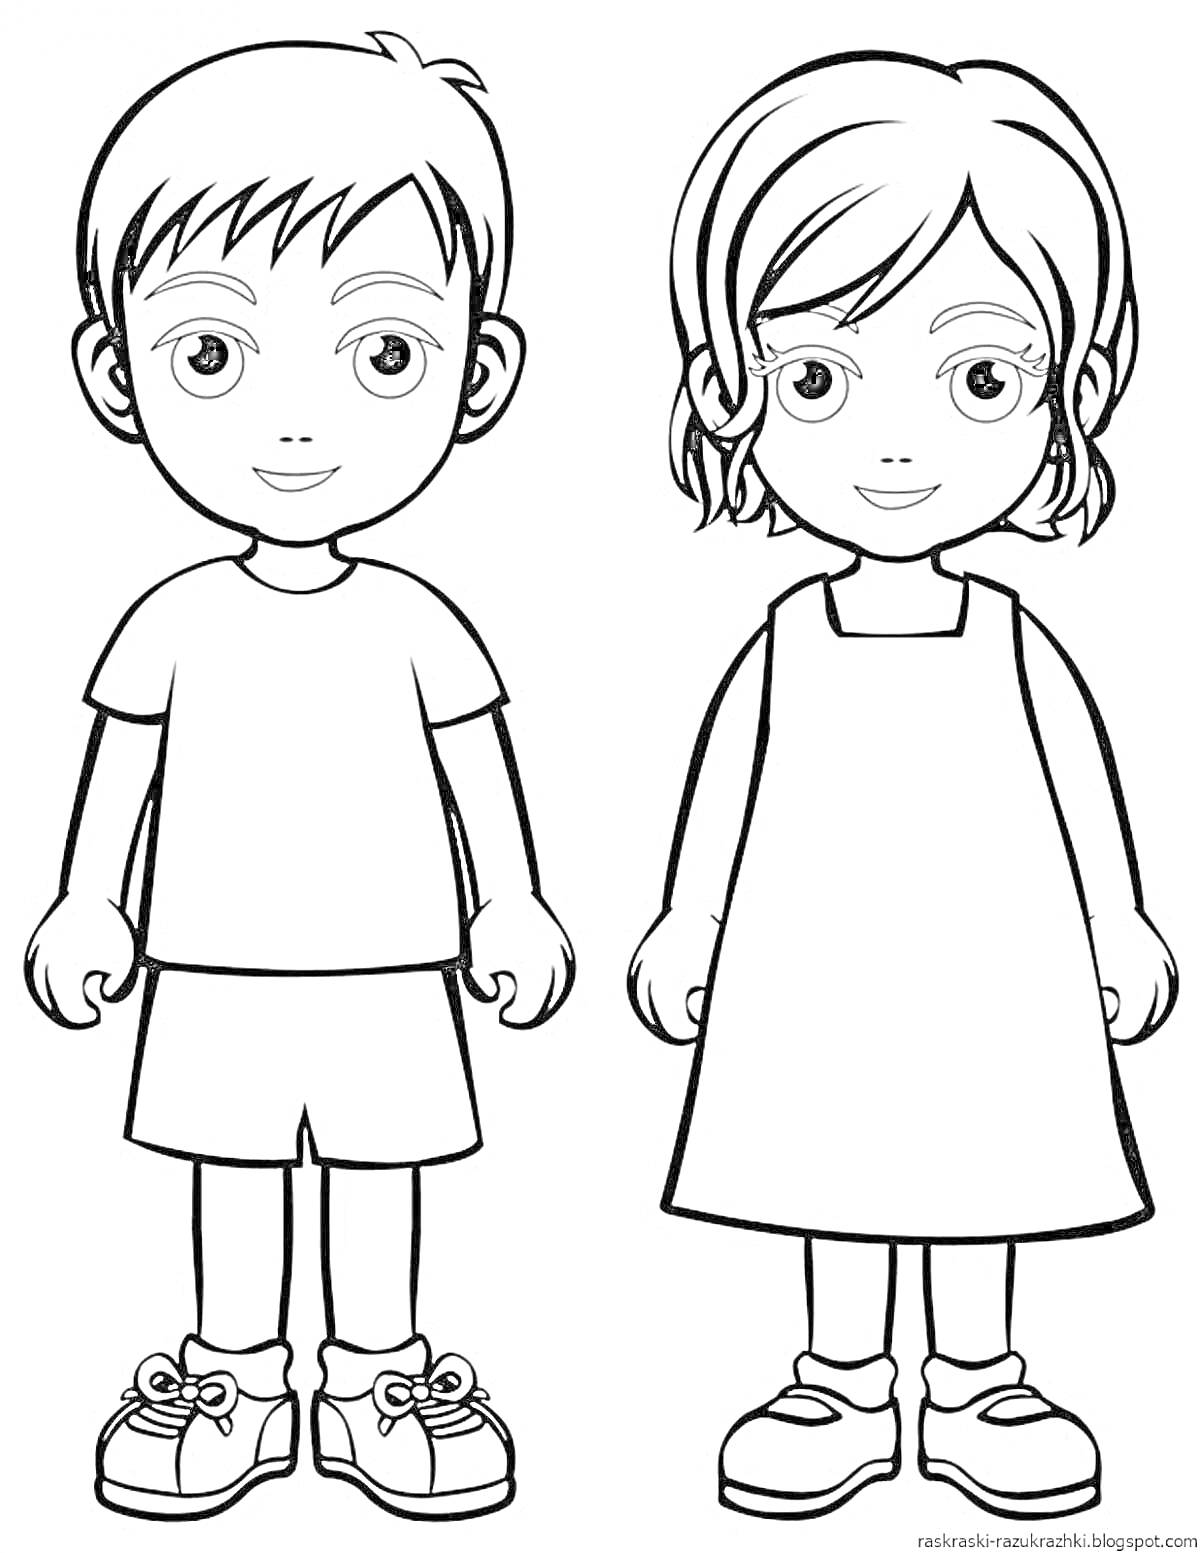 РаскраскаДети в одежде для игры - мальчик в шортах и футболке, девочка в платье и туфлях